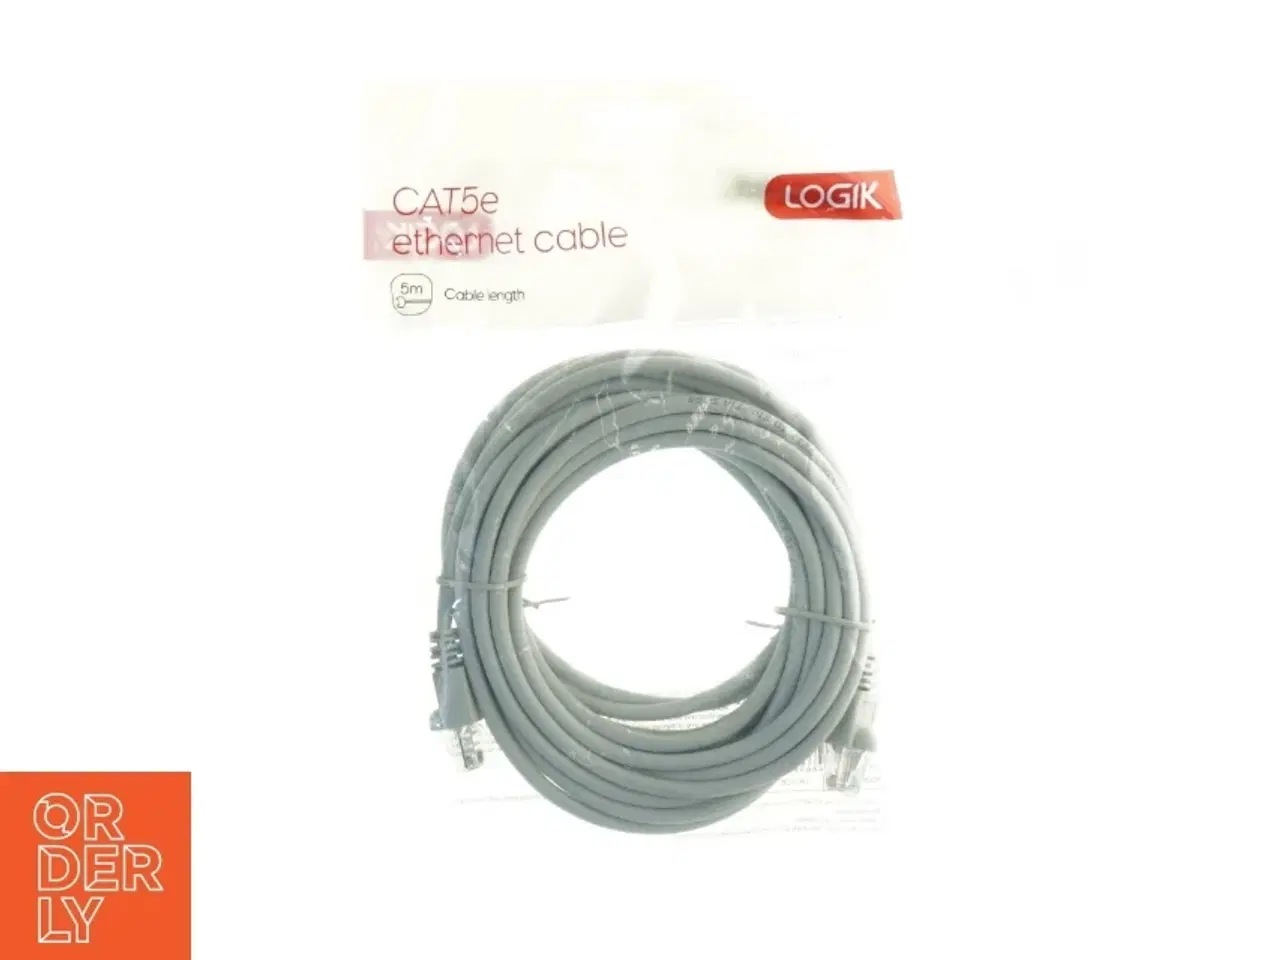 Billede 1 - CAT5e Ethernet kabel fra Logik (str. 500 cm)